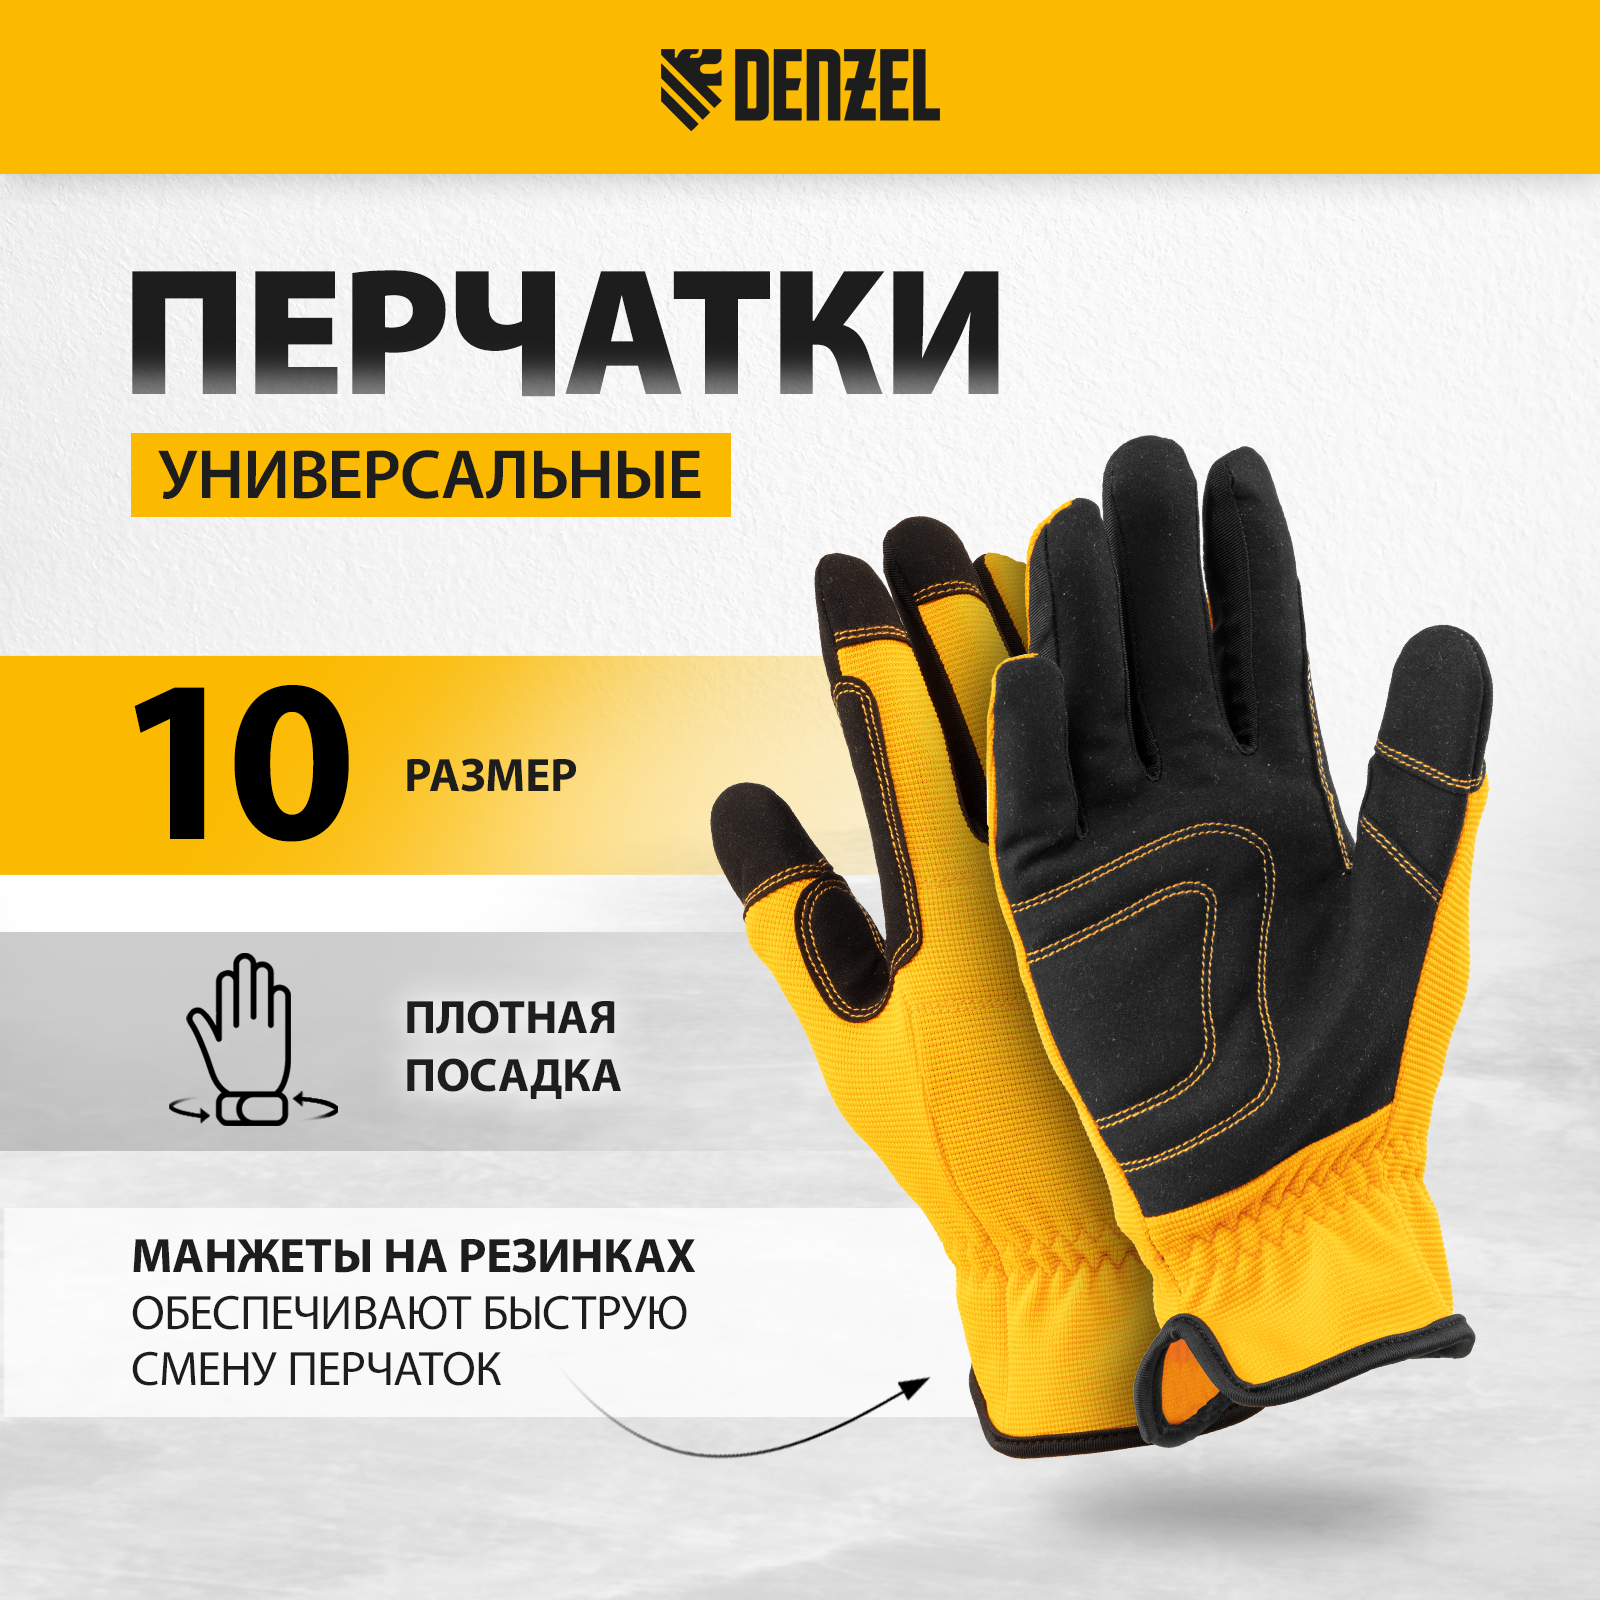 Перчатки универсальные DENZEL размер 10 67997 универсальные перчатки truper